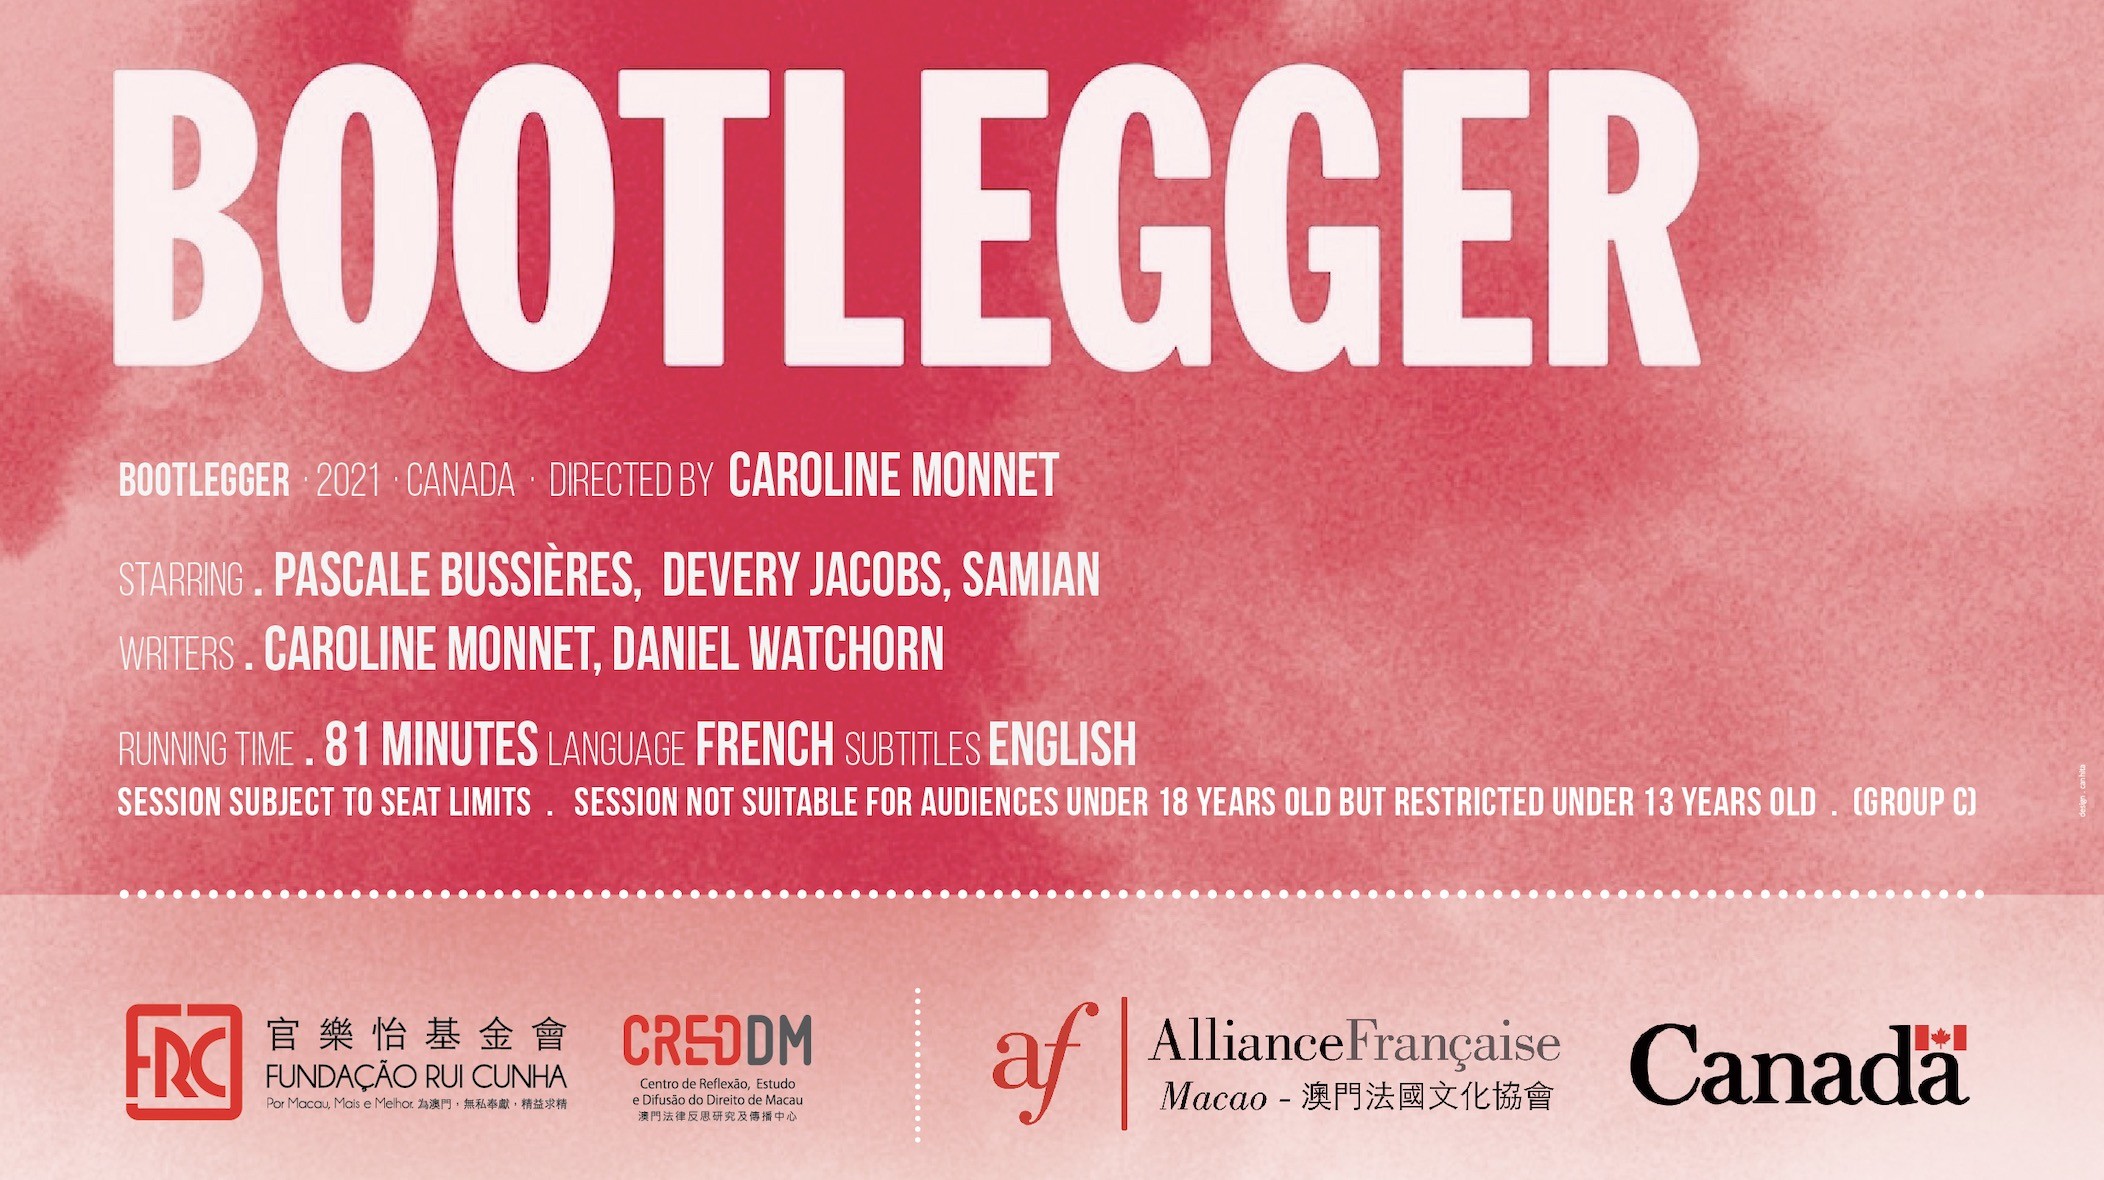 “Bootlegger” by Caroline Monnet